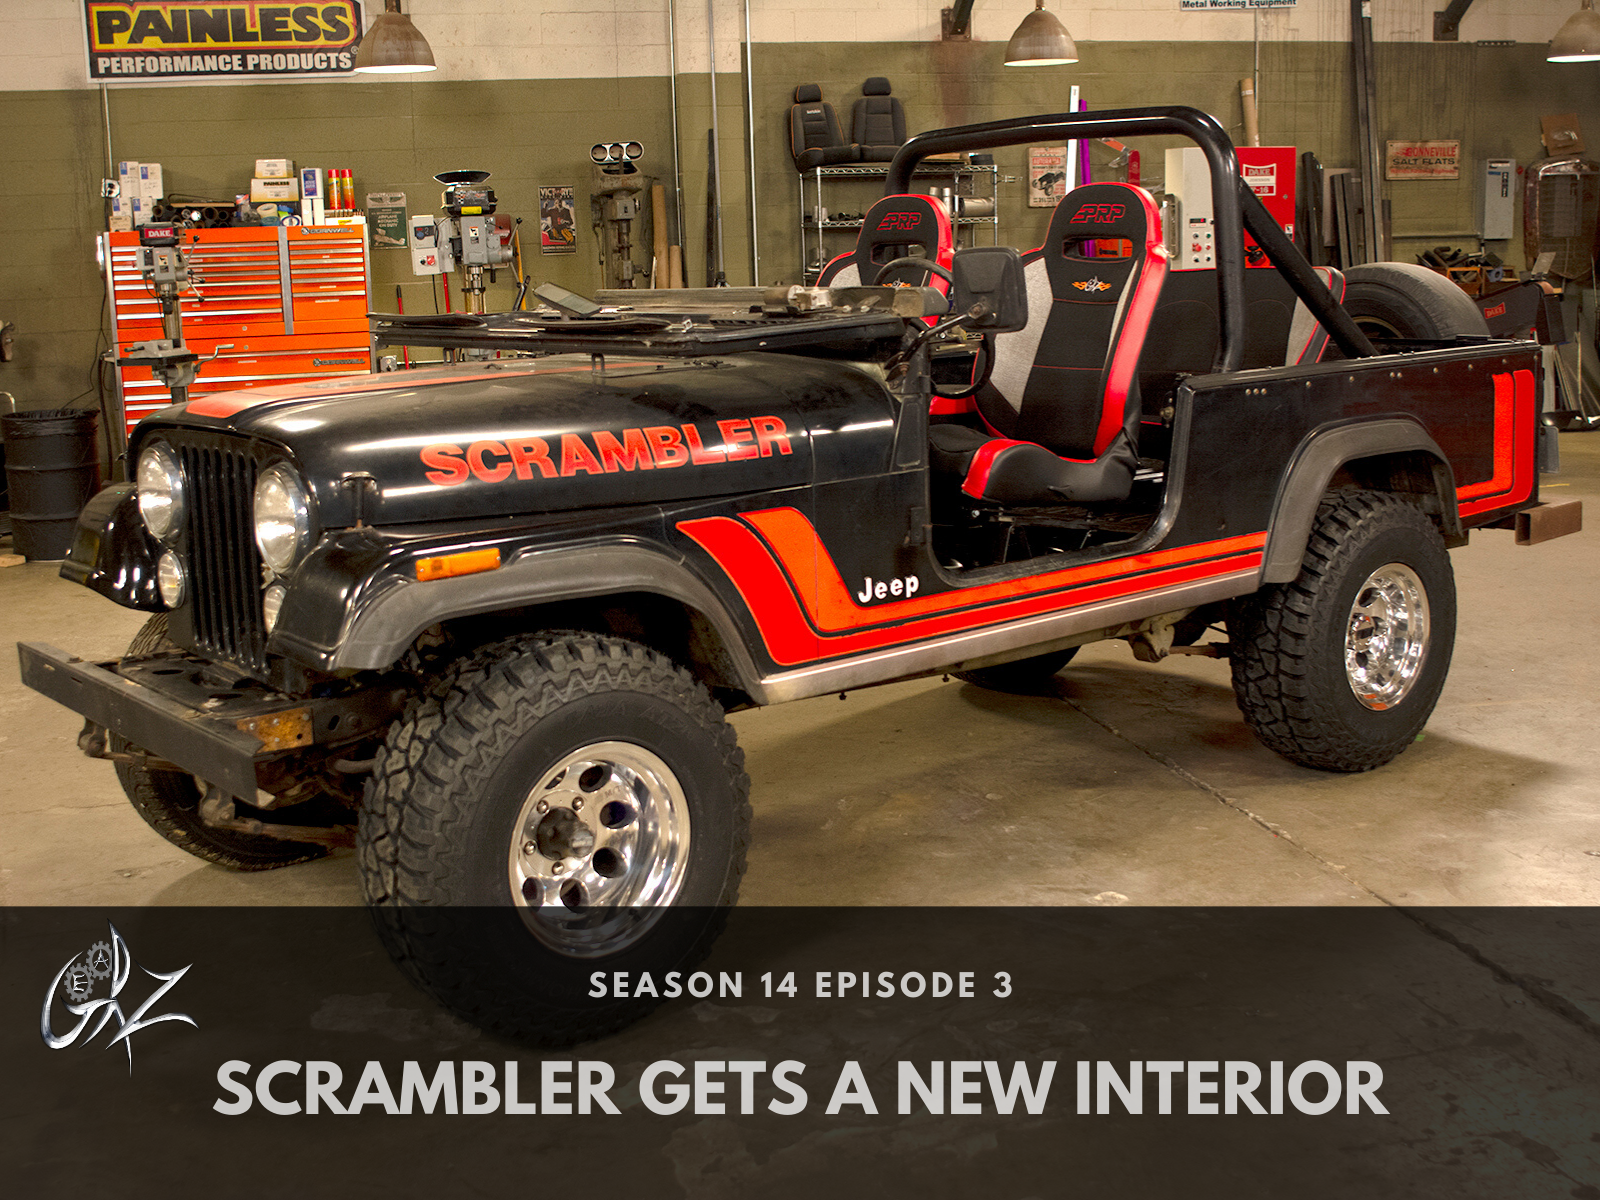 Scrambler Gets a New Interior